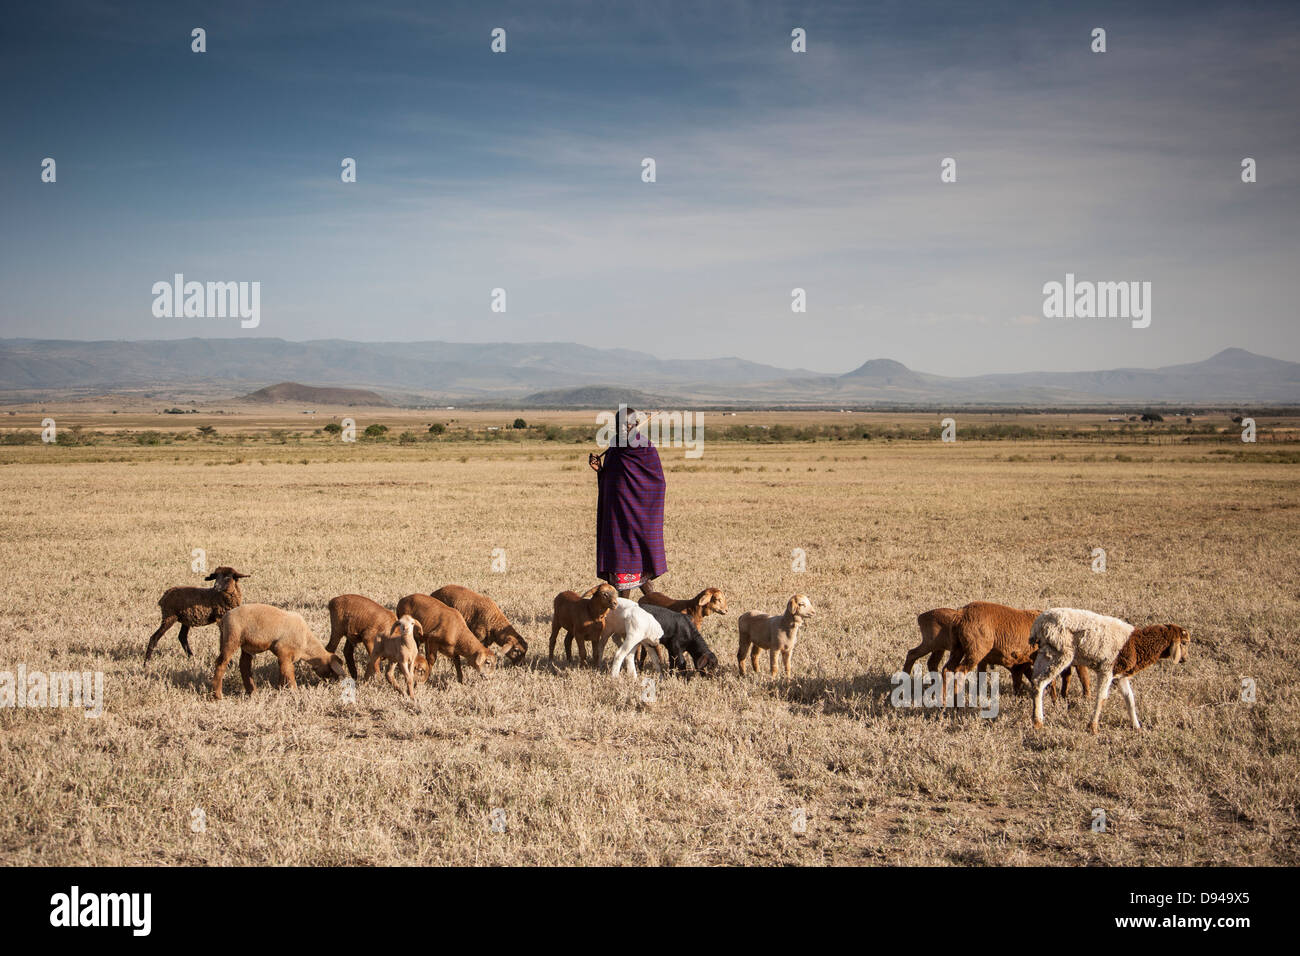 Massai-Familie in Rift Valley of Africa Ziegen hüten Stockfotografie - Alamy